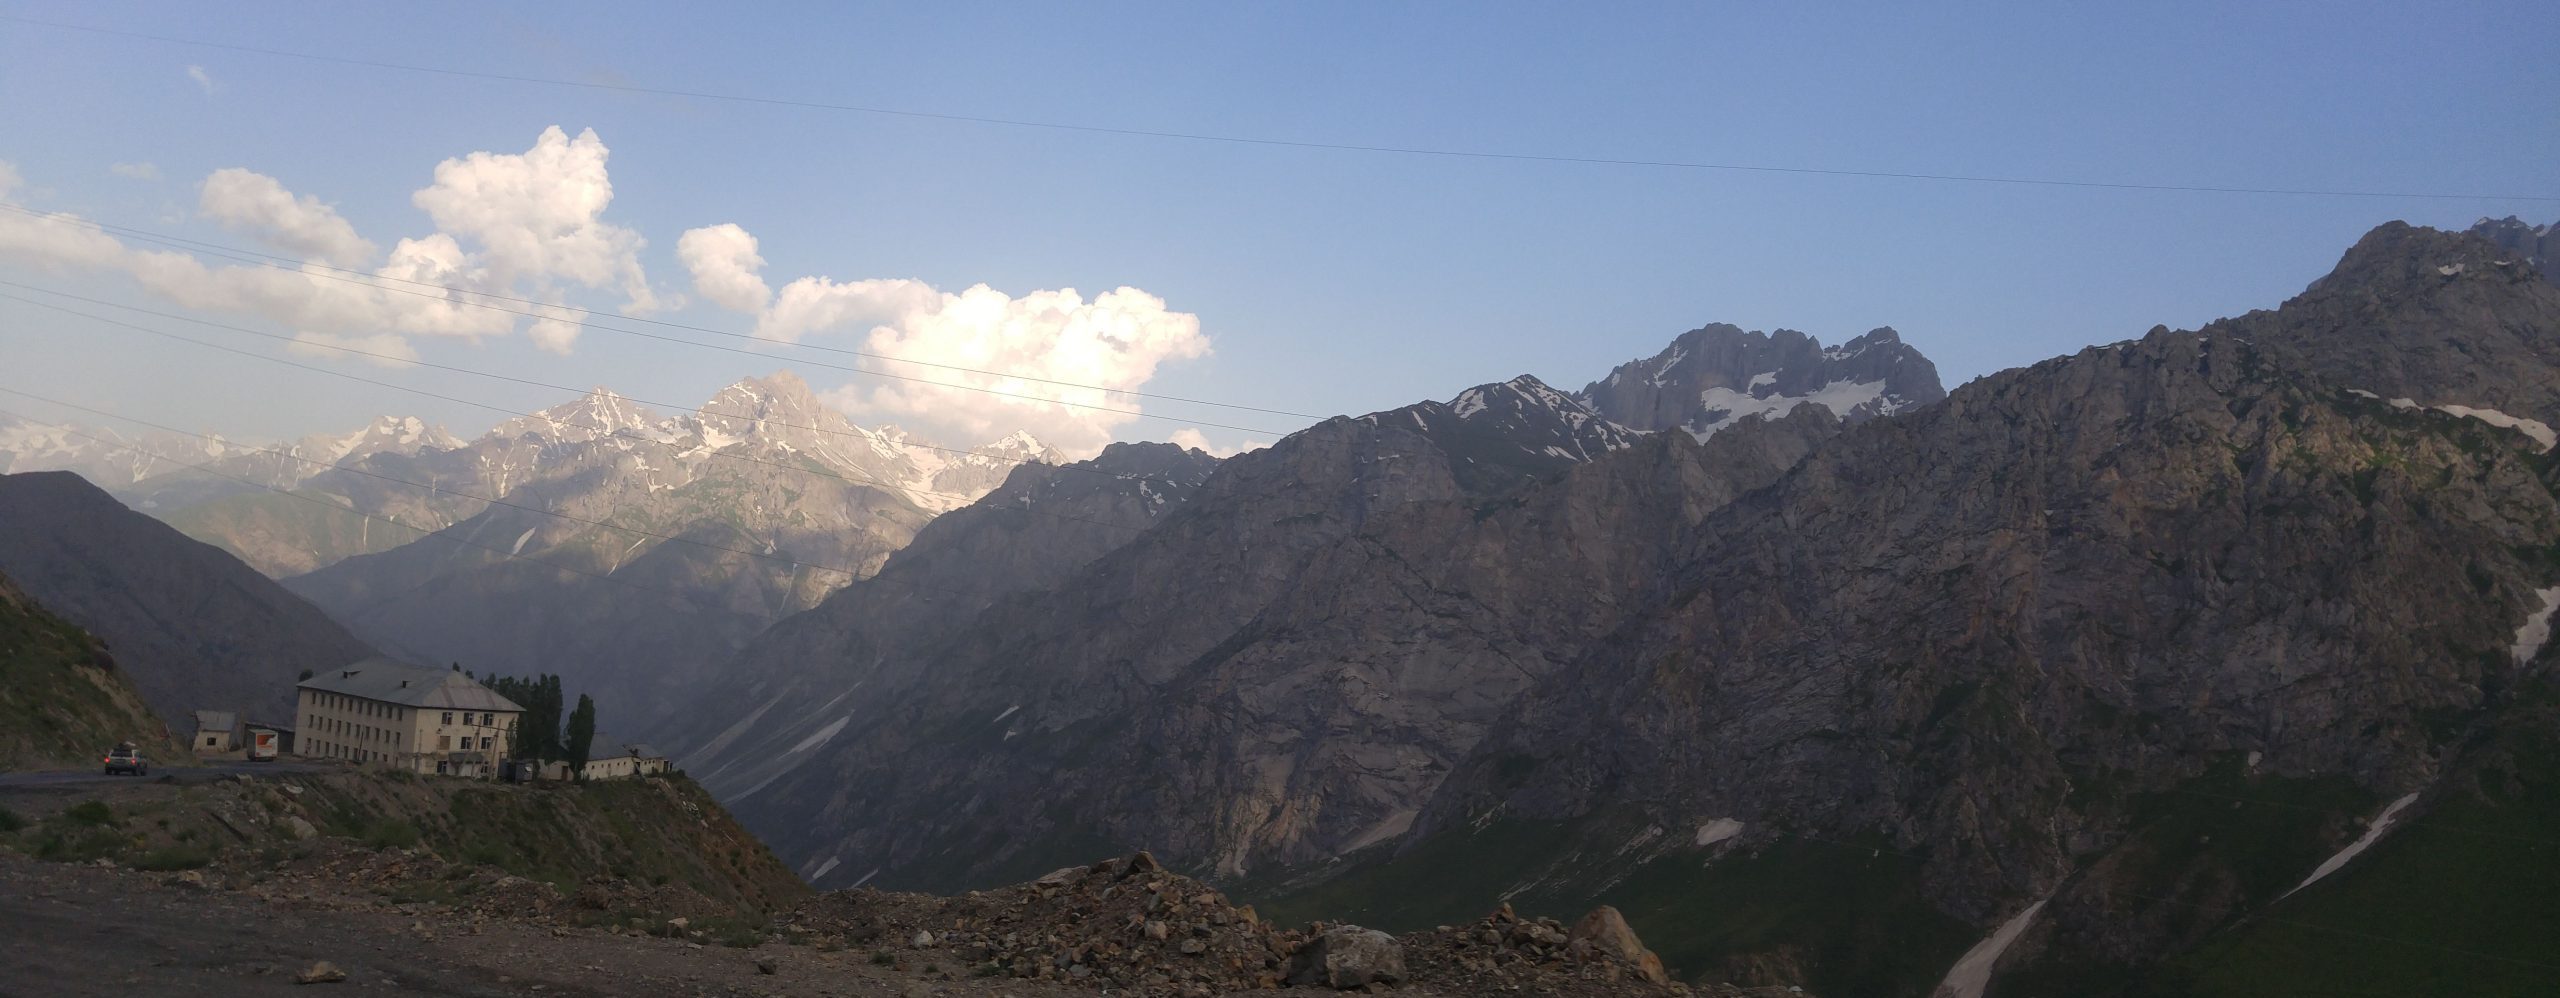 Appel d'offre - Programme d'eau et assainissement à grande échelle au Tadjikistan